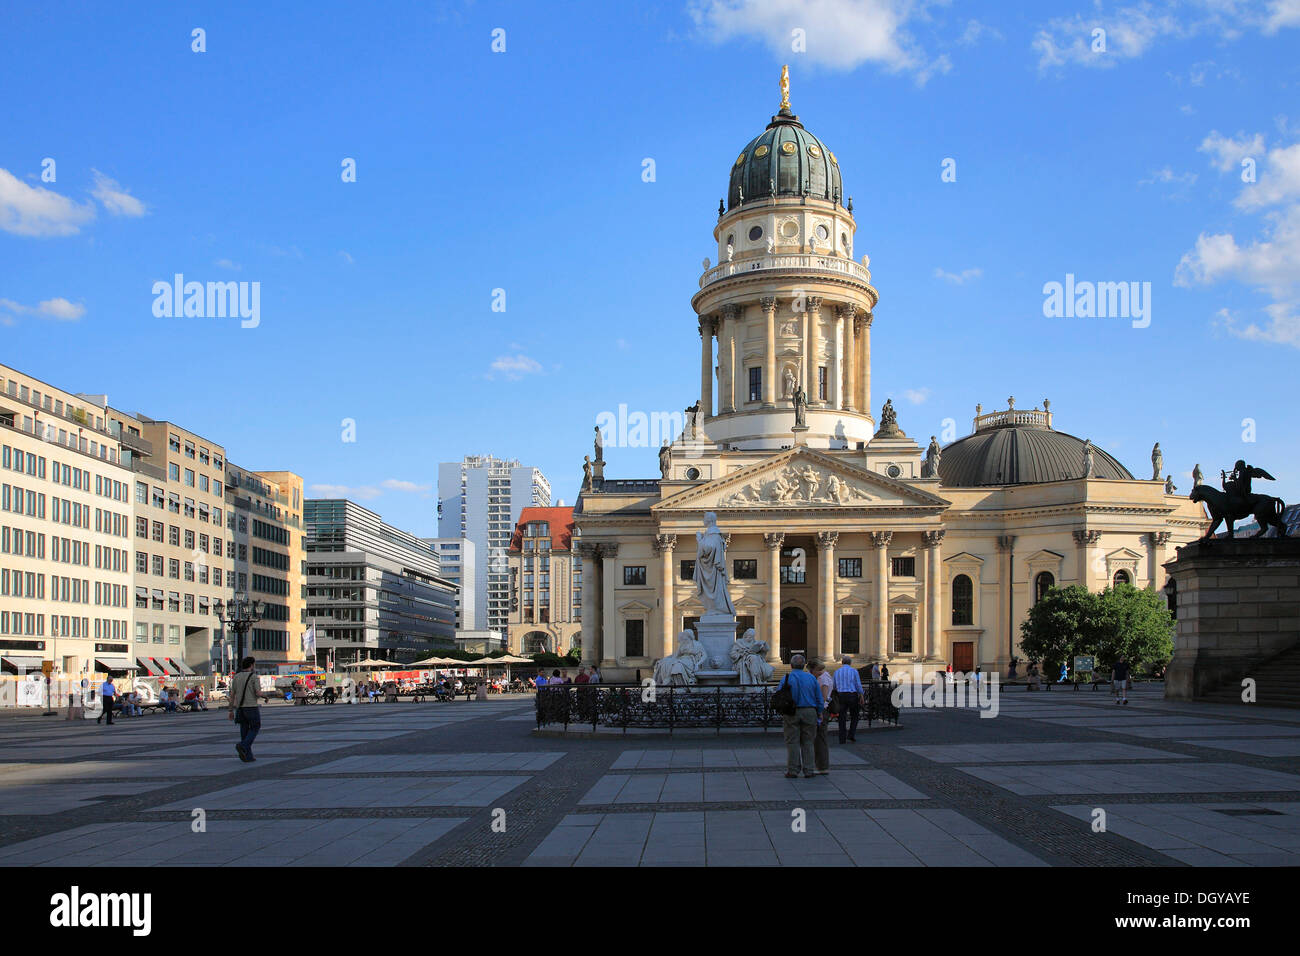 Église, Cathédrale allemande, la place Gendarmenmarkt, Berlin-Mitte, Berlin Banque D'Images